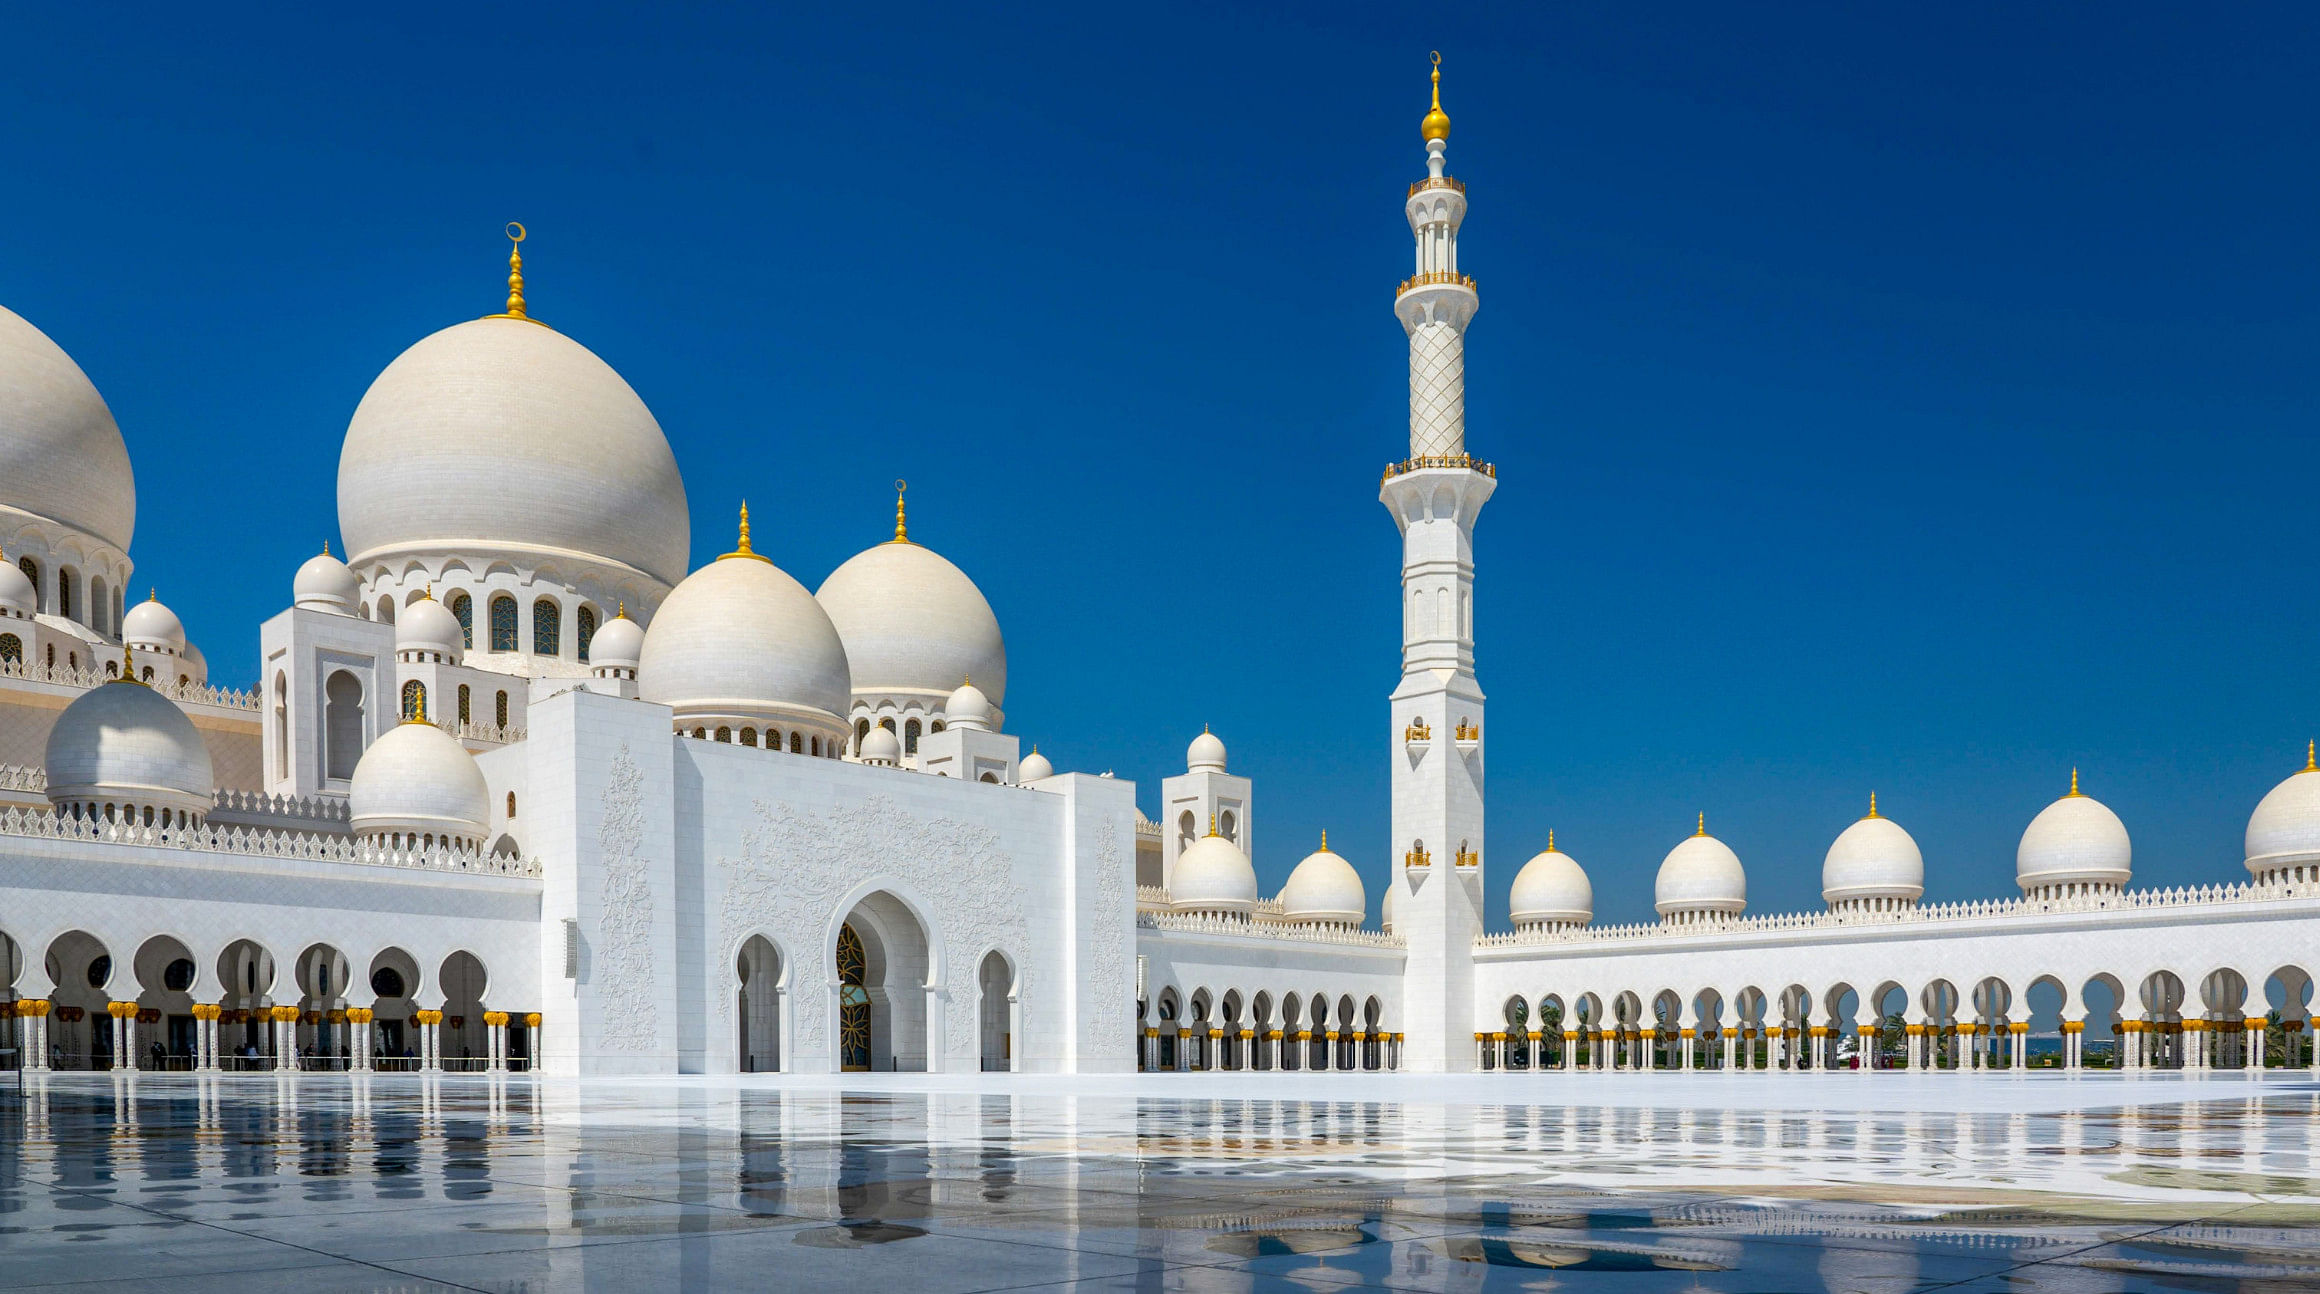 مسجد الشيخ زايد الكبير في أبوظبي، الإمارات العربية المتحدة